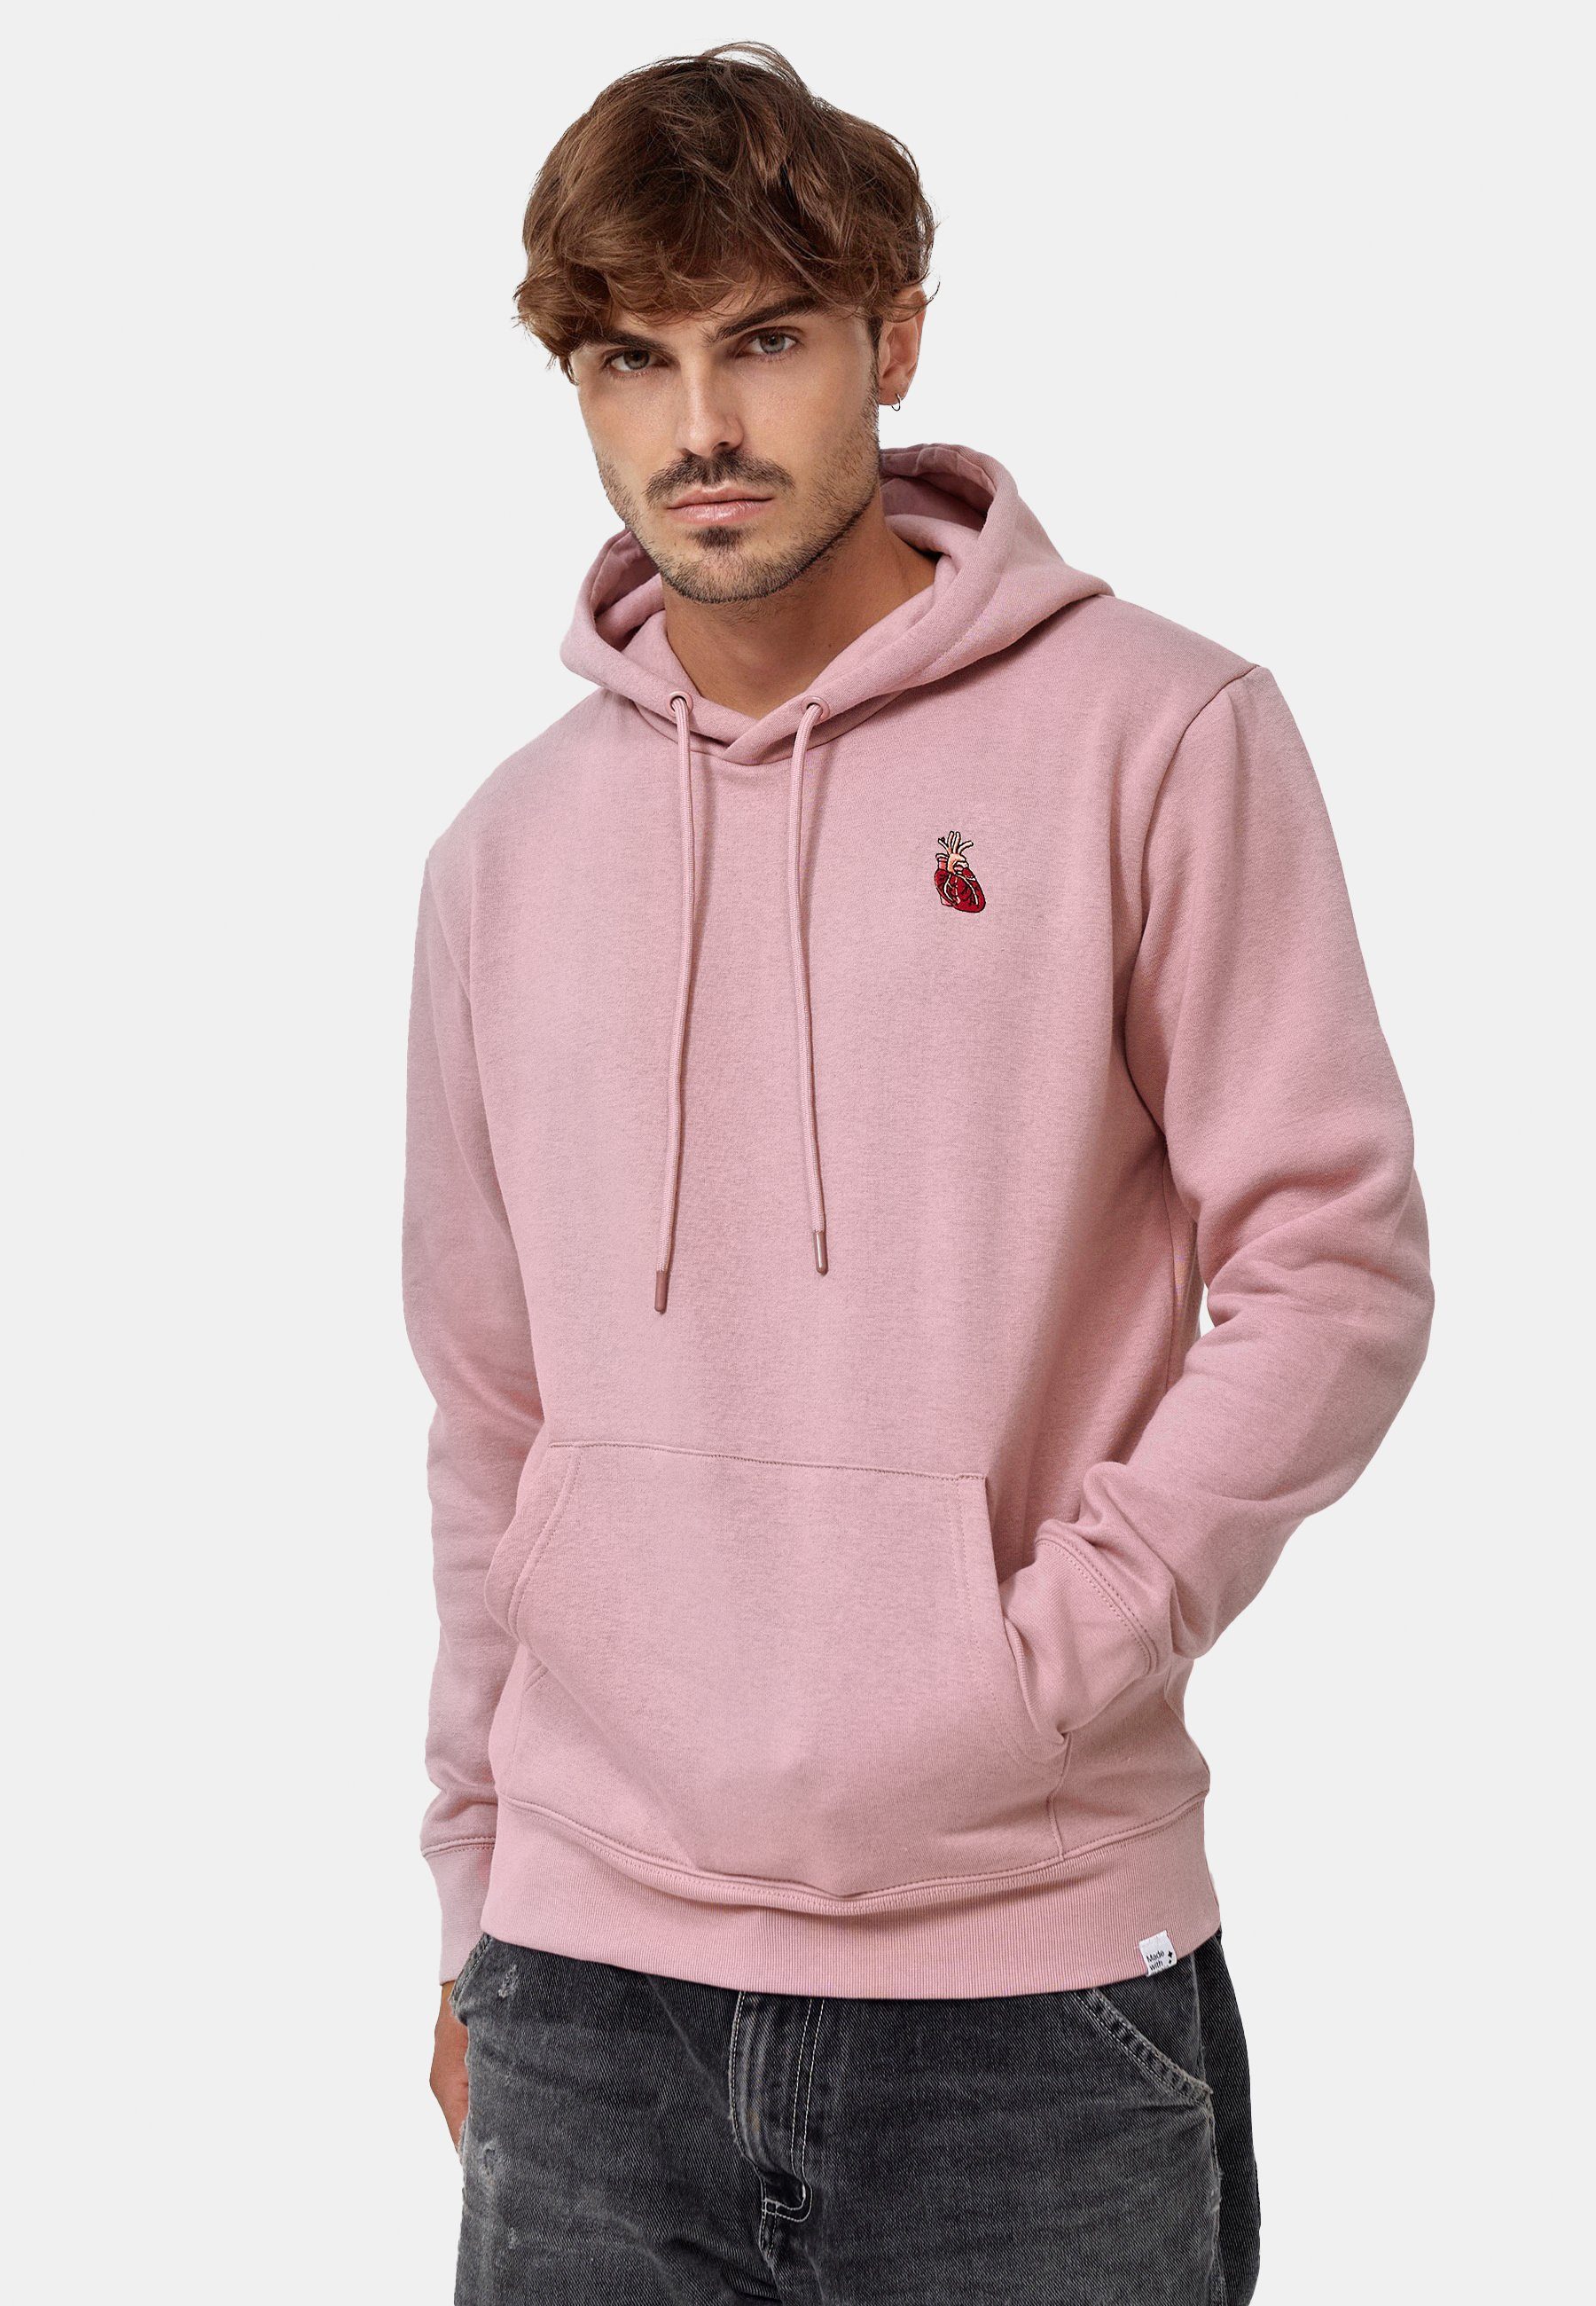 MIKON Hoodie Herz GOTS zertifizierte Bio-Baumwolle Pink | Sweatshirts